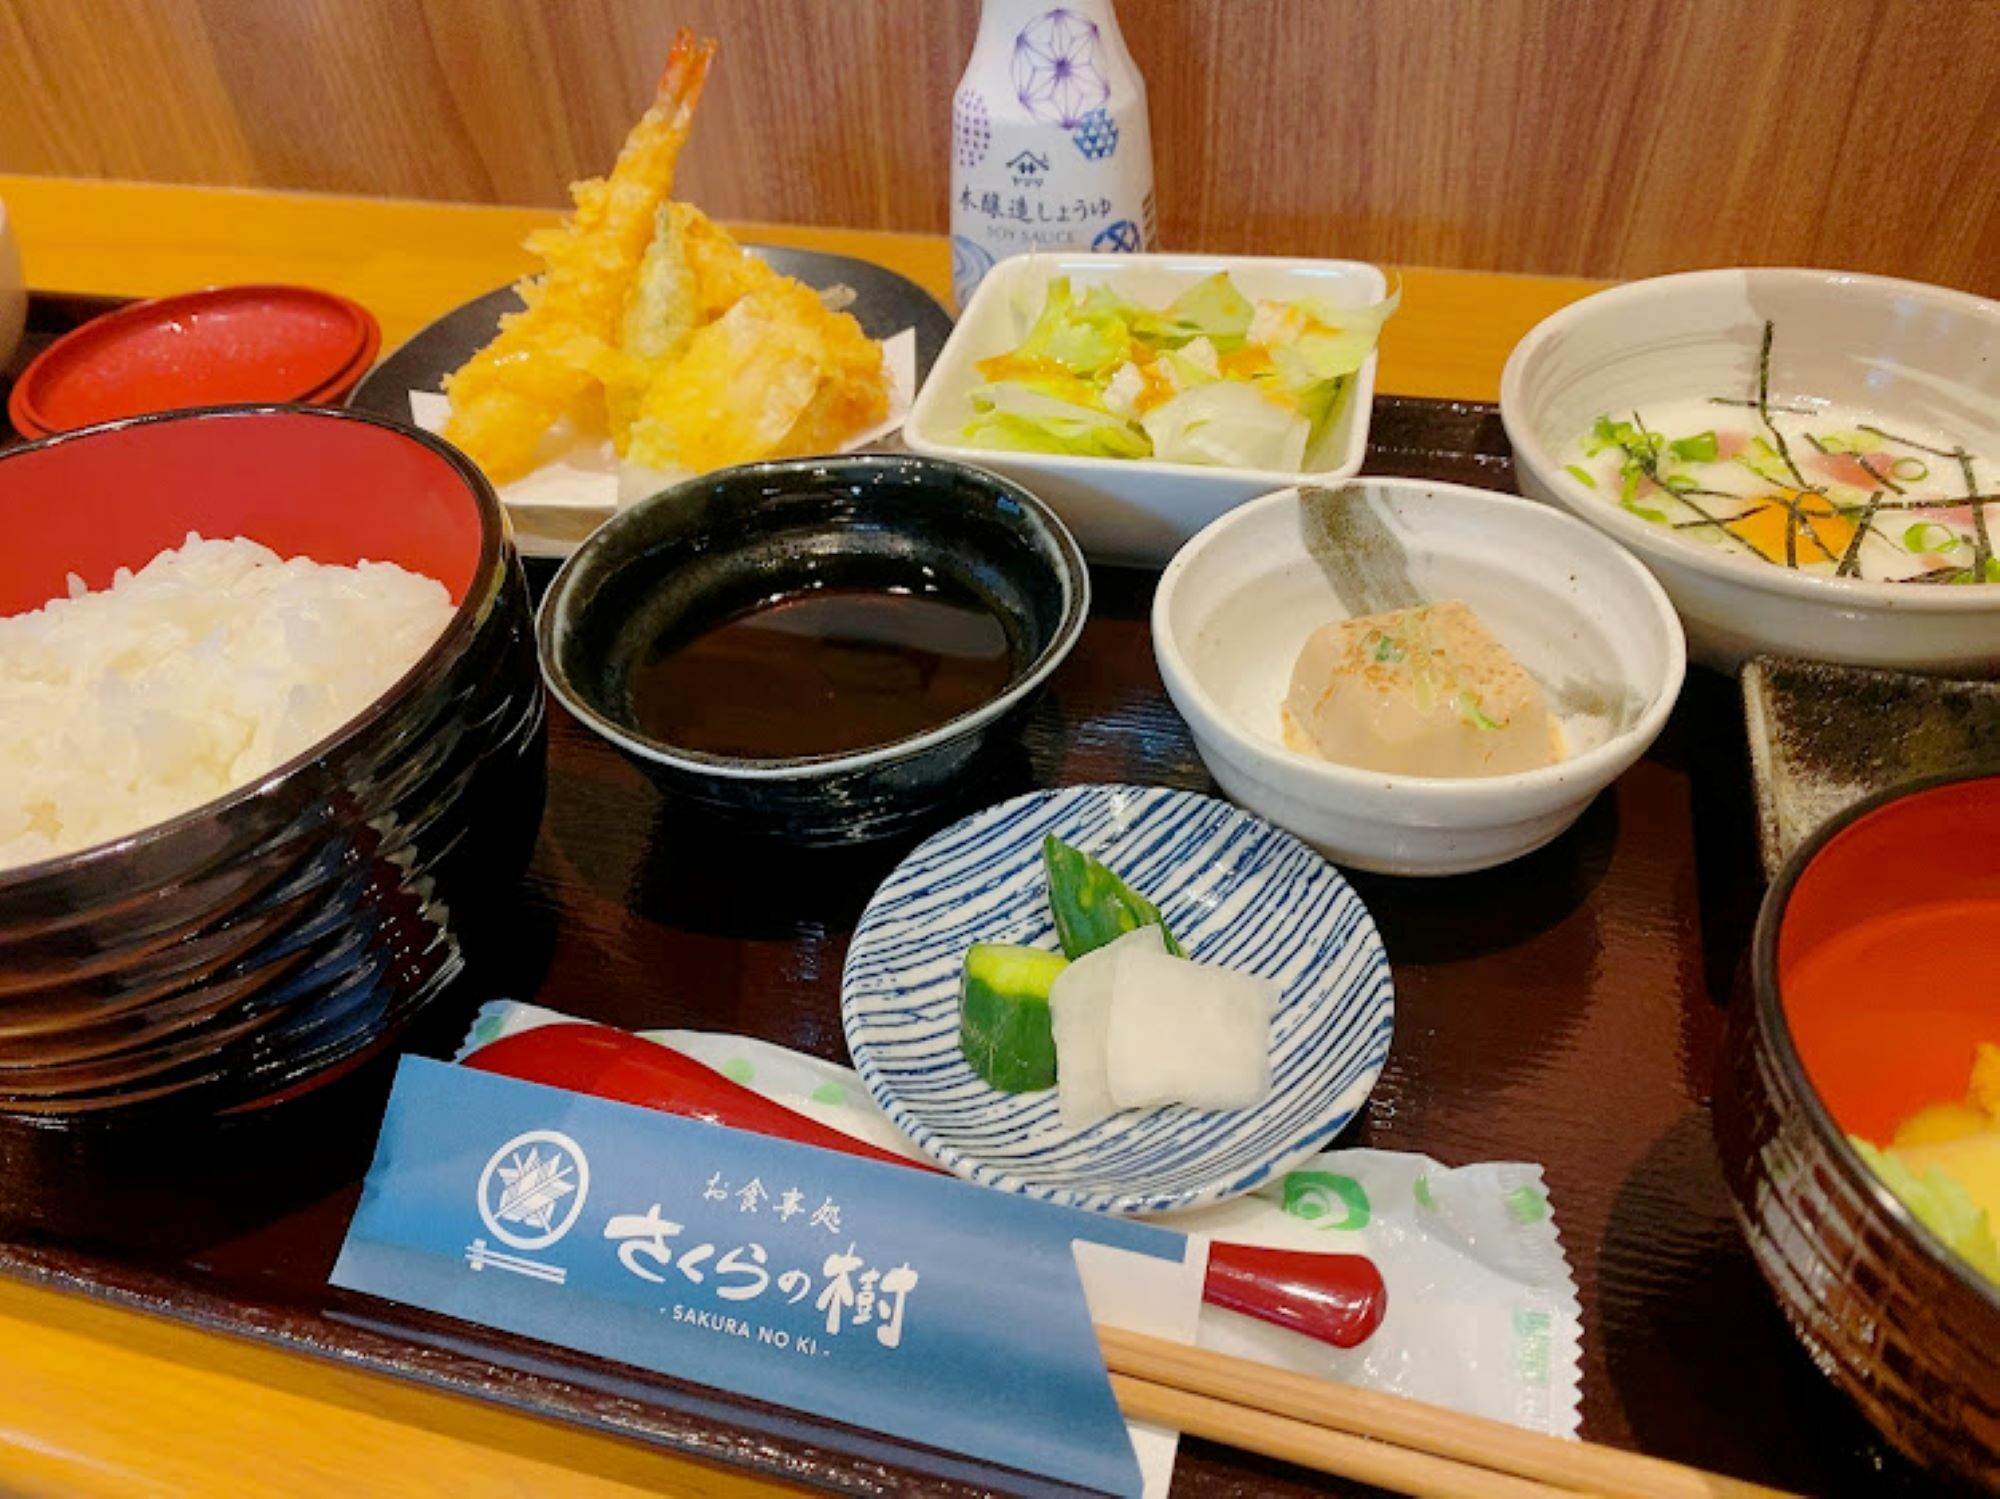 天ぷら盛合せと鮪すき身山かけをチョイス。